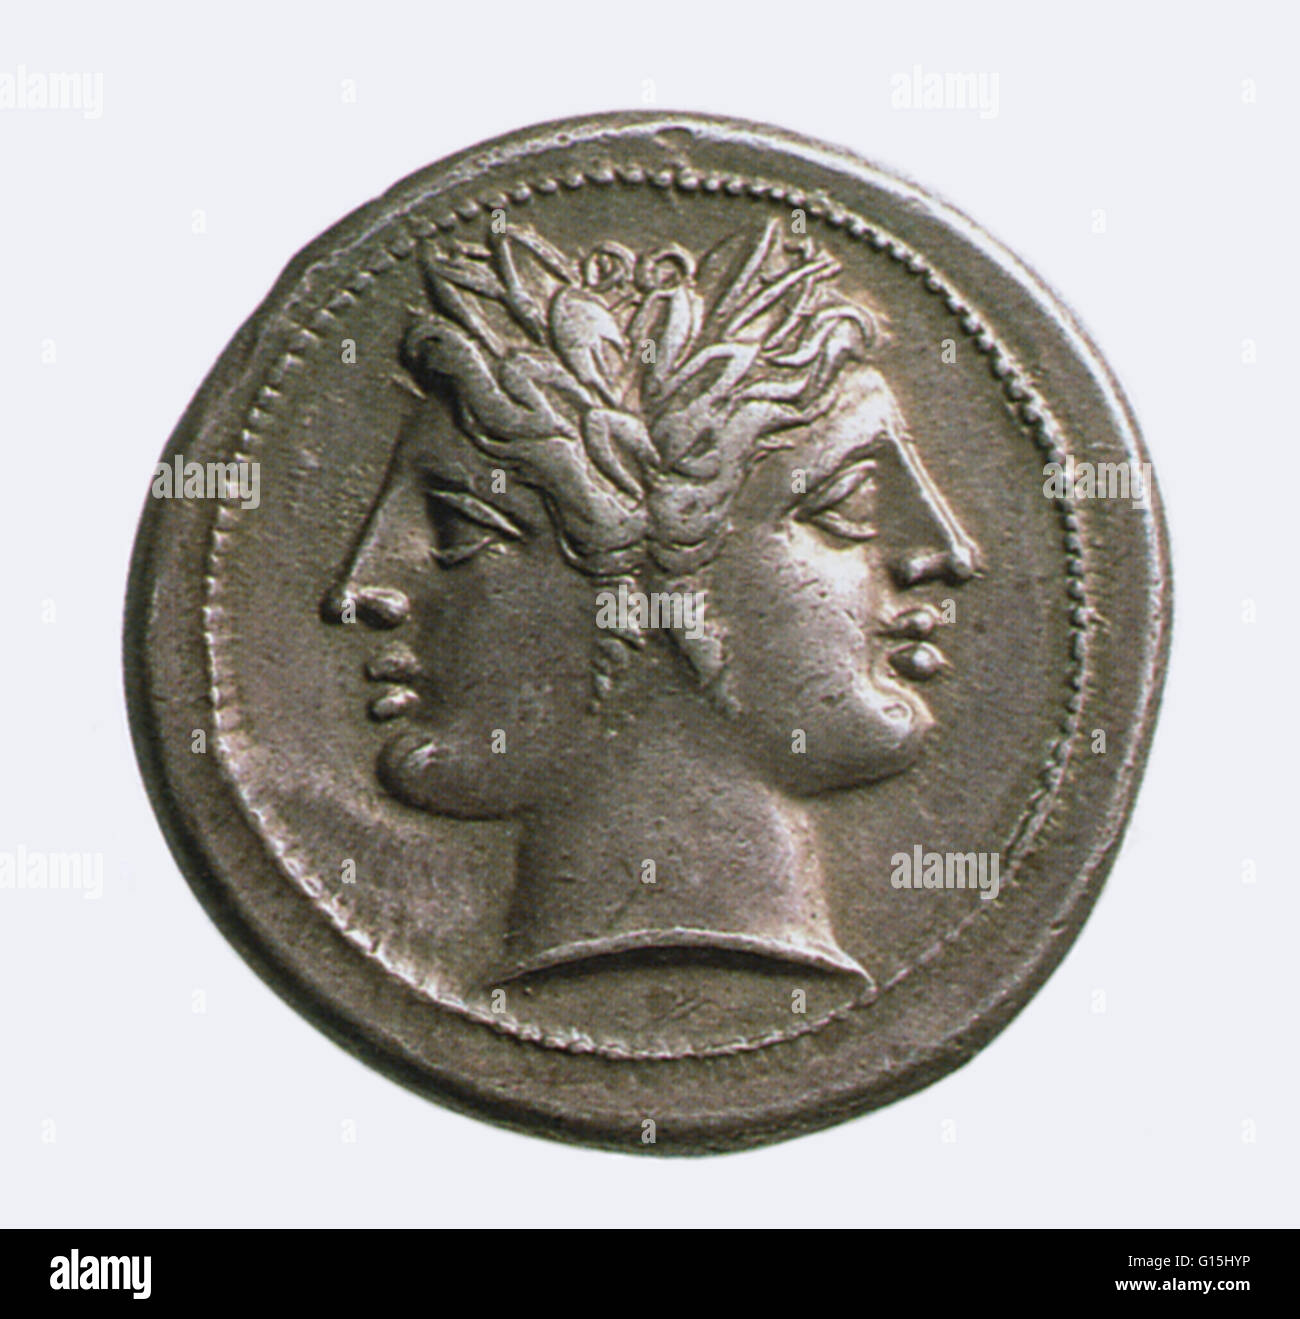 Medaglia di bronzo raffigurante Janus, gemelle dio romano degli inizi e transizioni, portoni e cancelli. Janus è anche un simbolo del tempo, guardando indietro al passato e al futuro. Foto Stock